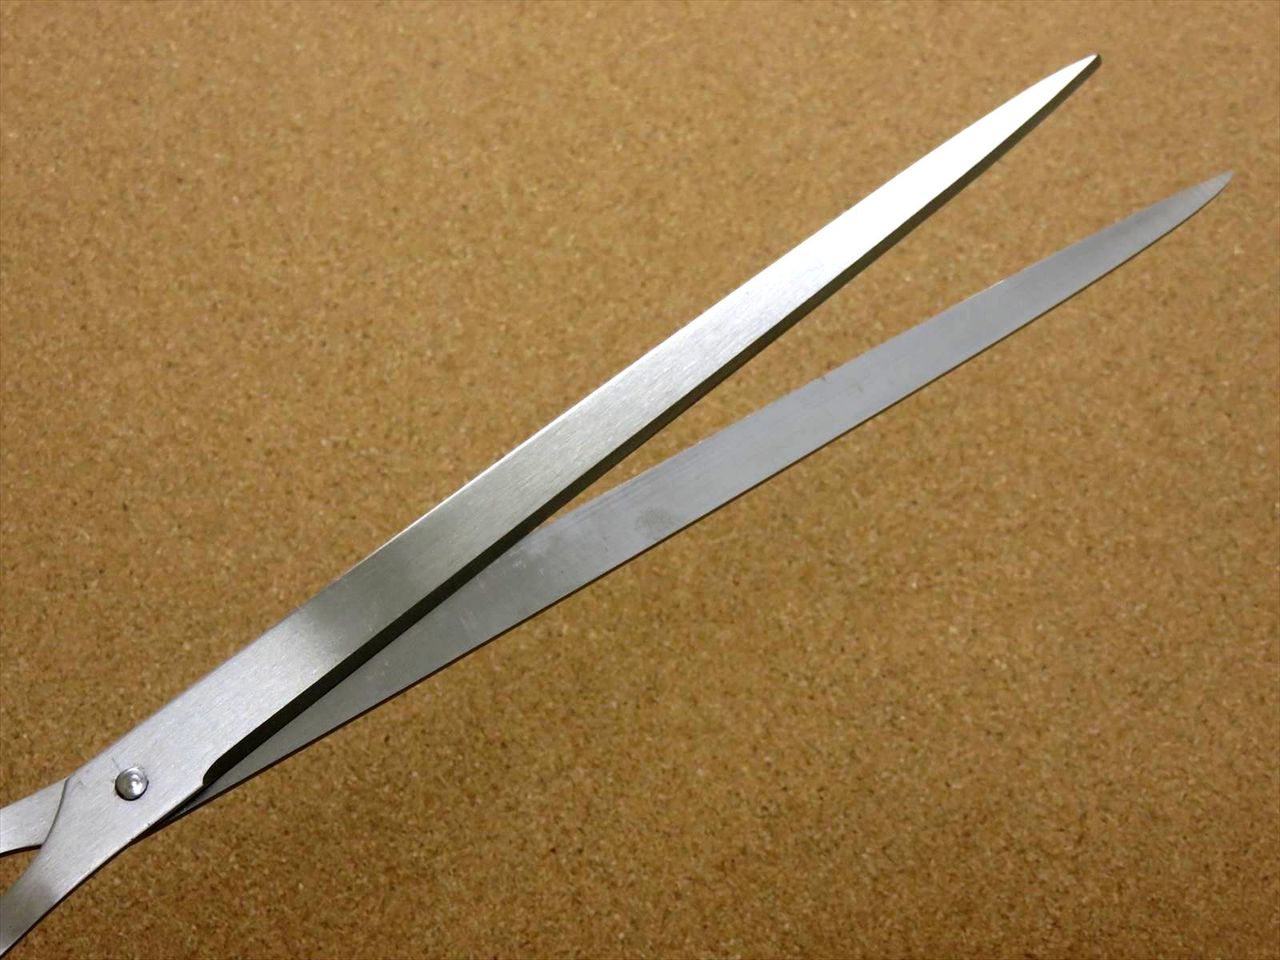 Japanese ALLEX Just Size Scissors Super Long Ideal For A4 Copy Paper Cut JAPAN